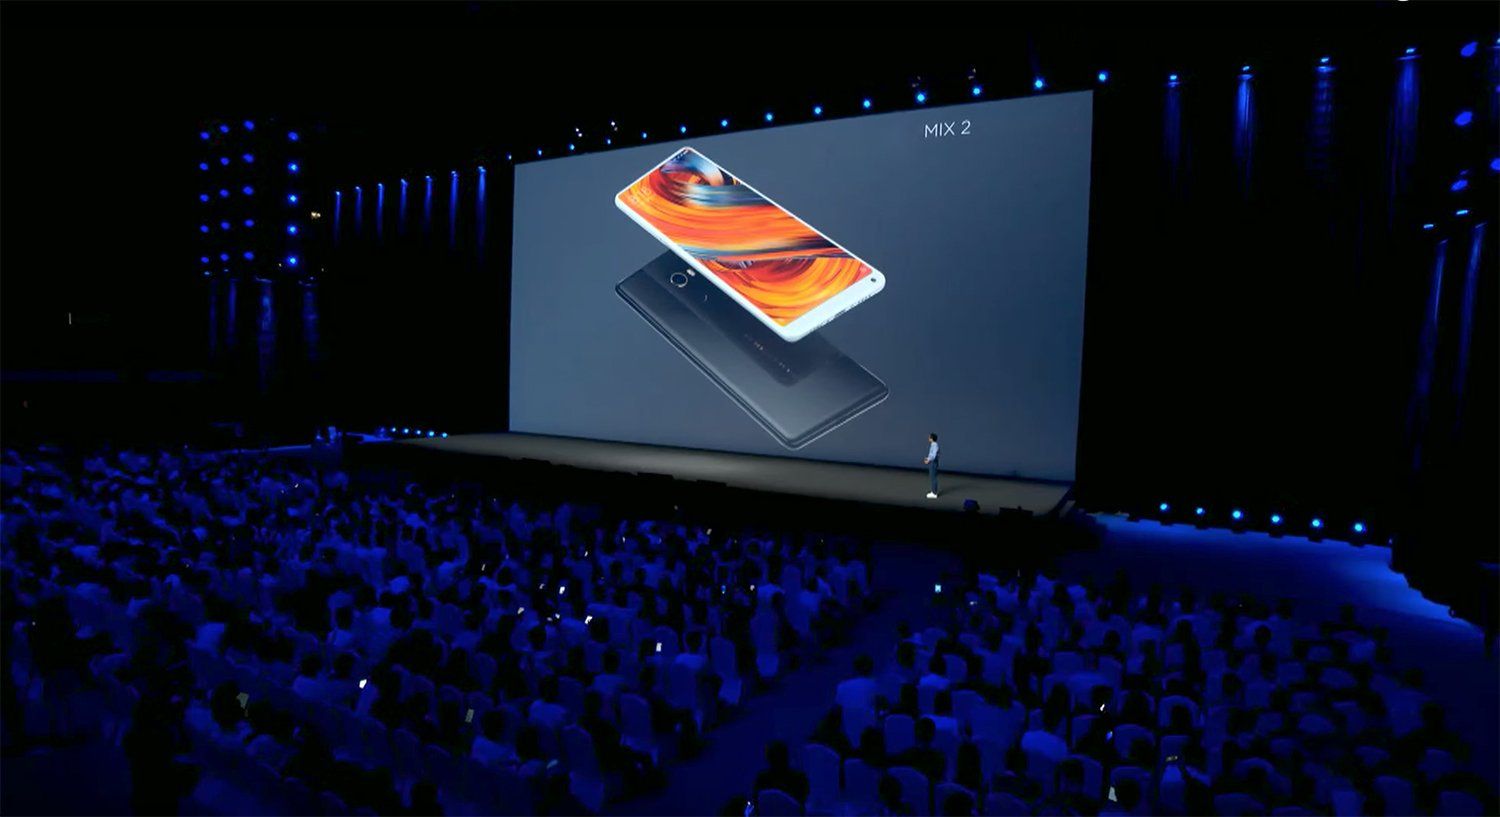 Xiaomi ทุบสถิติใหม่ แค่เดือนกันยายนเดือนเดียวขายมือถือไปแล้วกว่า 10 ล้านเครื่อง